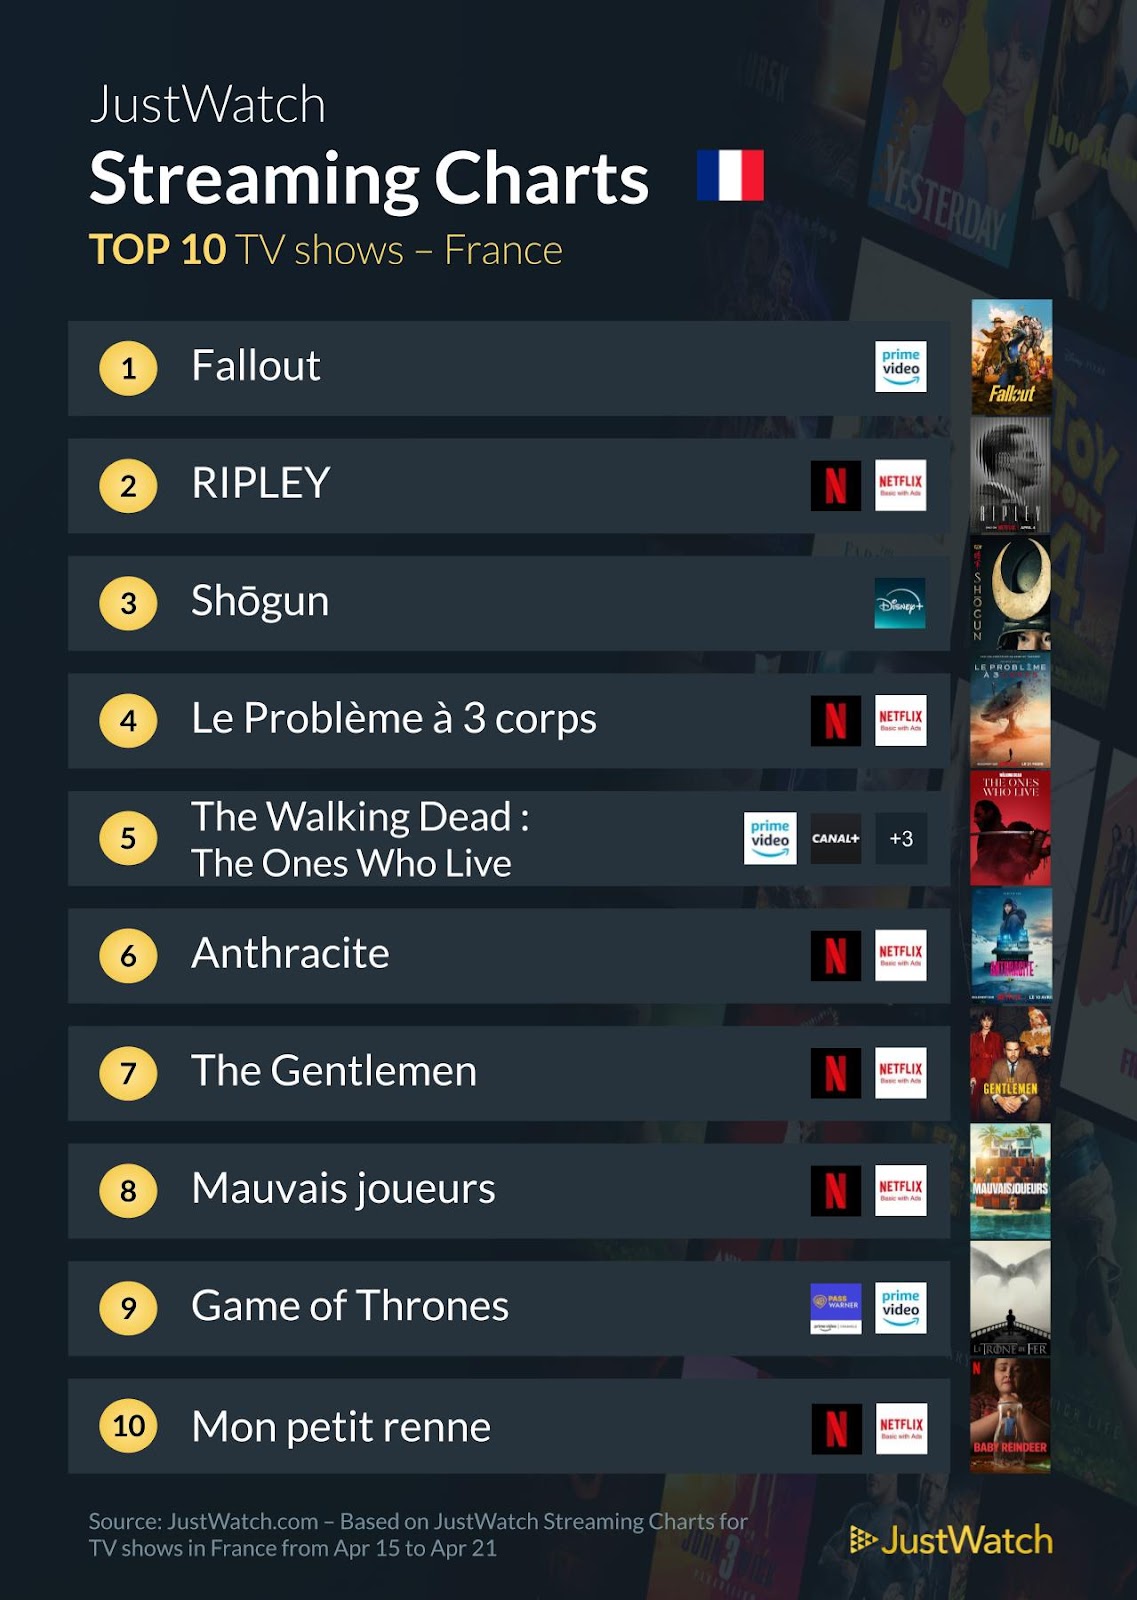 "Rebel Moon - Partie 2", "Fallout", "Ripley"... : Le top 10 des films et séries les plus populaires de la semaine